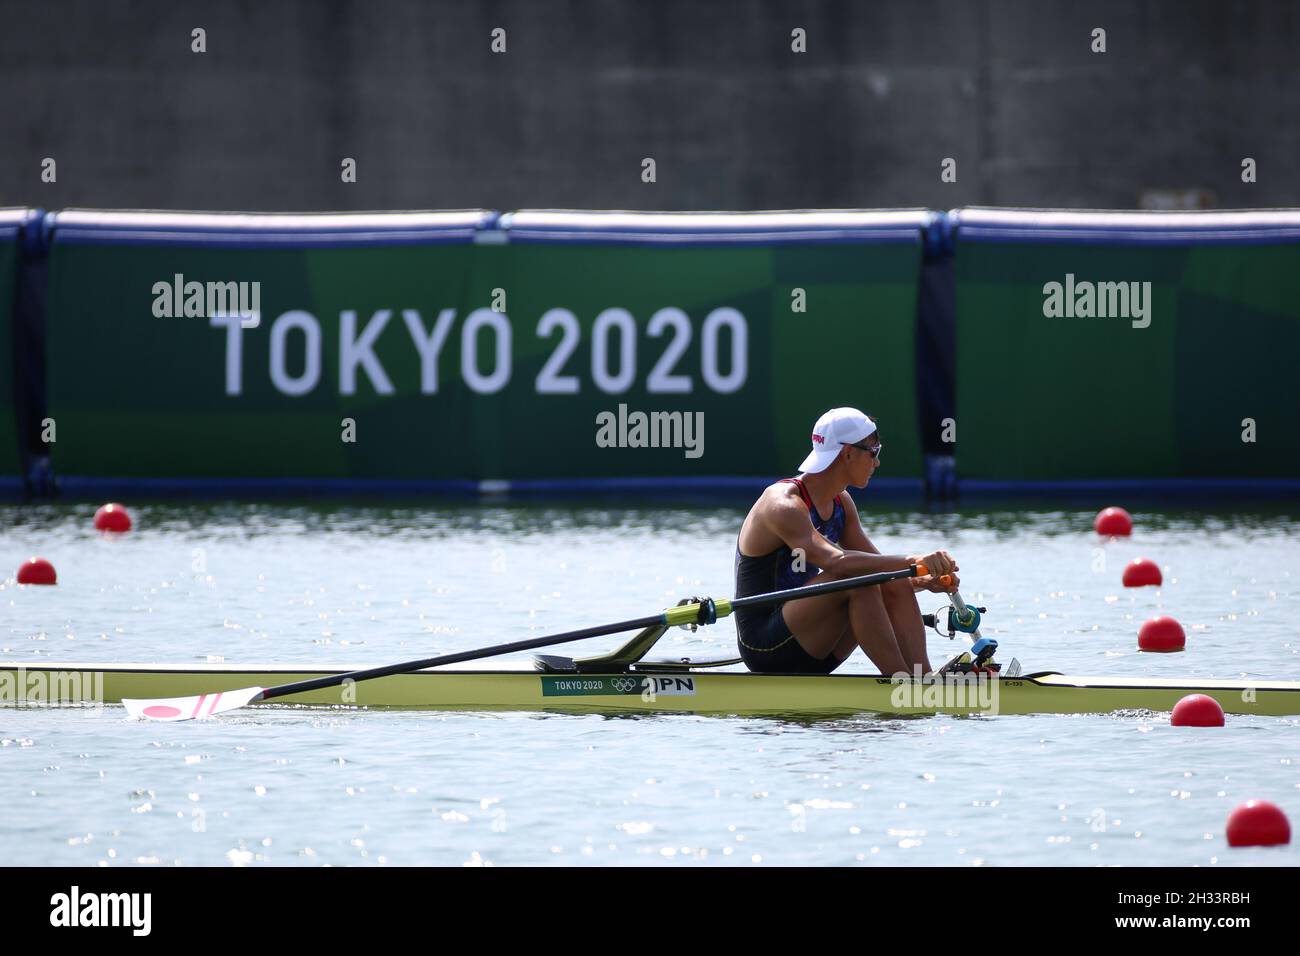 23 JUILLET 2021 - TOKYO, JAPON: ARAKAWA Ryuta du Japon termine deuxième dans le Rowing Men's Single Sculls Heat 6 aux Jeux Olympiques de Tokyo 2020 (photo Banque D'Images